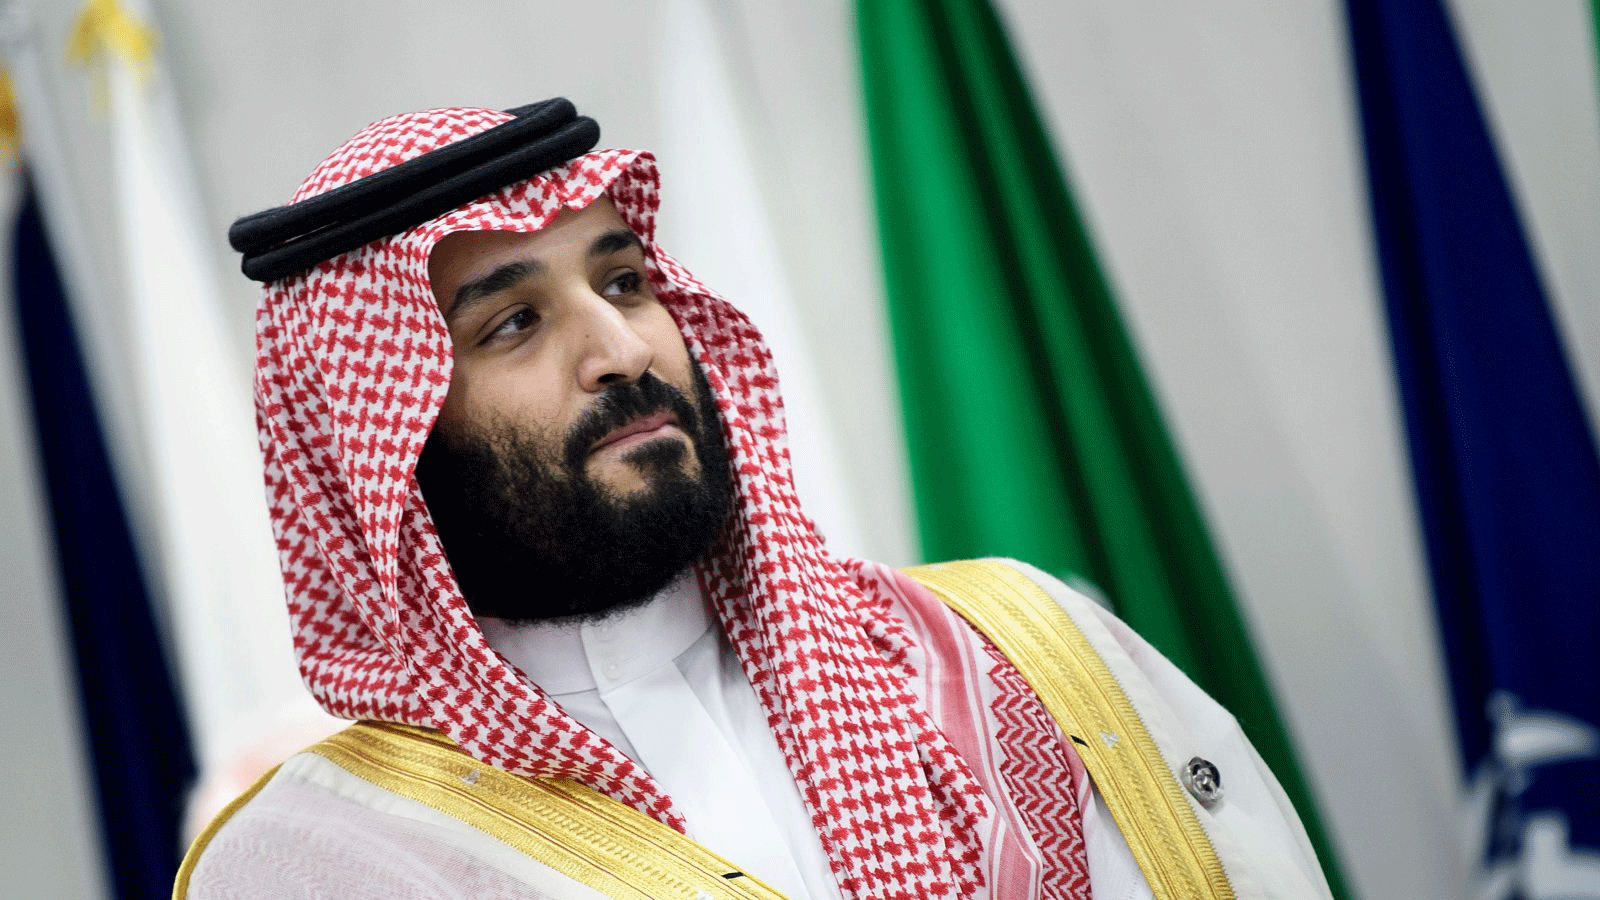 ولي العهد السعودي الأمير محمد بن سلمان يحضر اجتماعًا خلال قمة مجموعة العشرين في أوساكا، 28 حزيران/ يونيو 2019